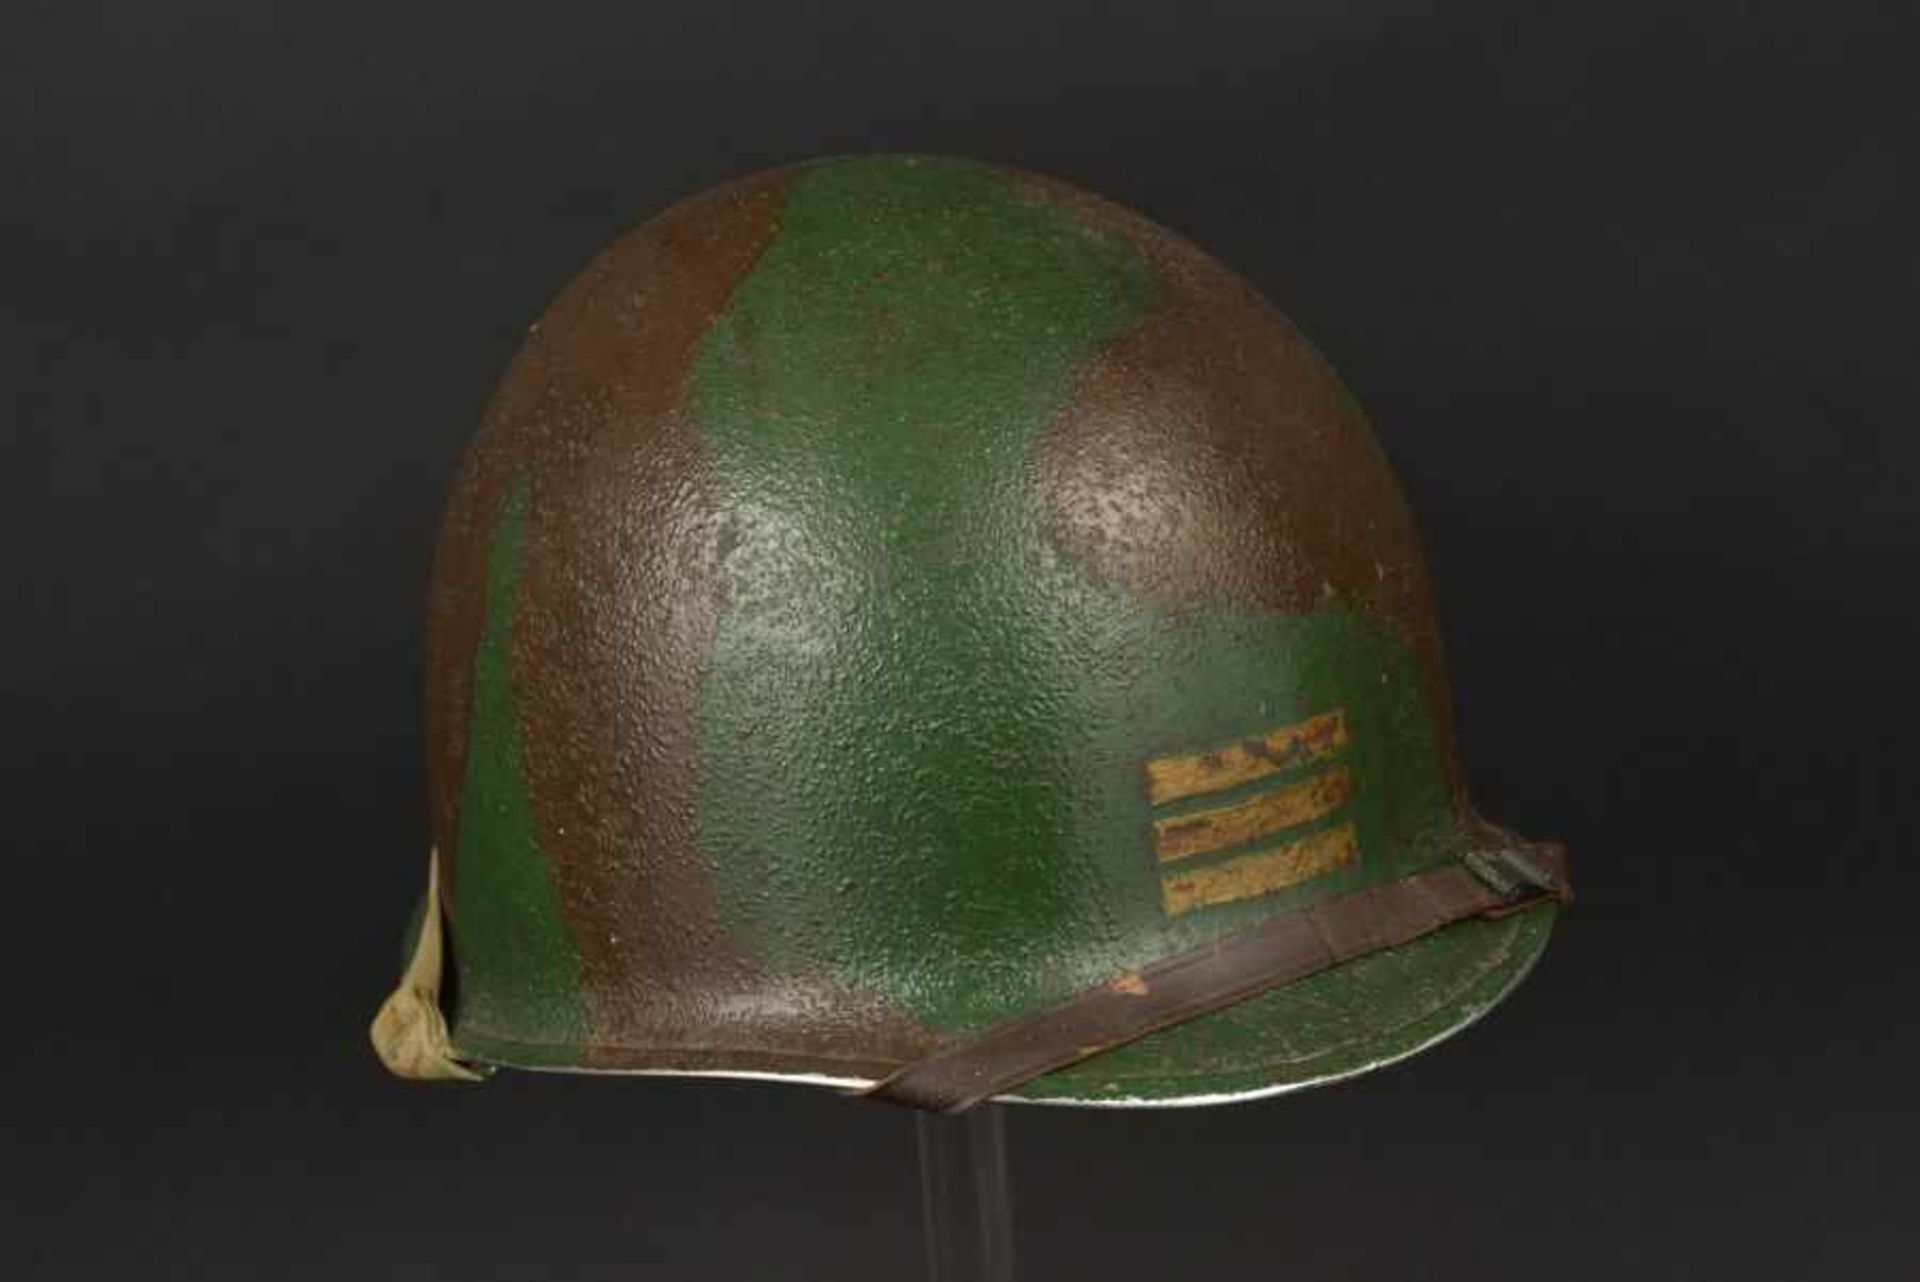 Casque camouflé d'un capitaine de la 2ème DB française. Camouflaged helmet of a Captain of the 2nd